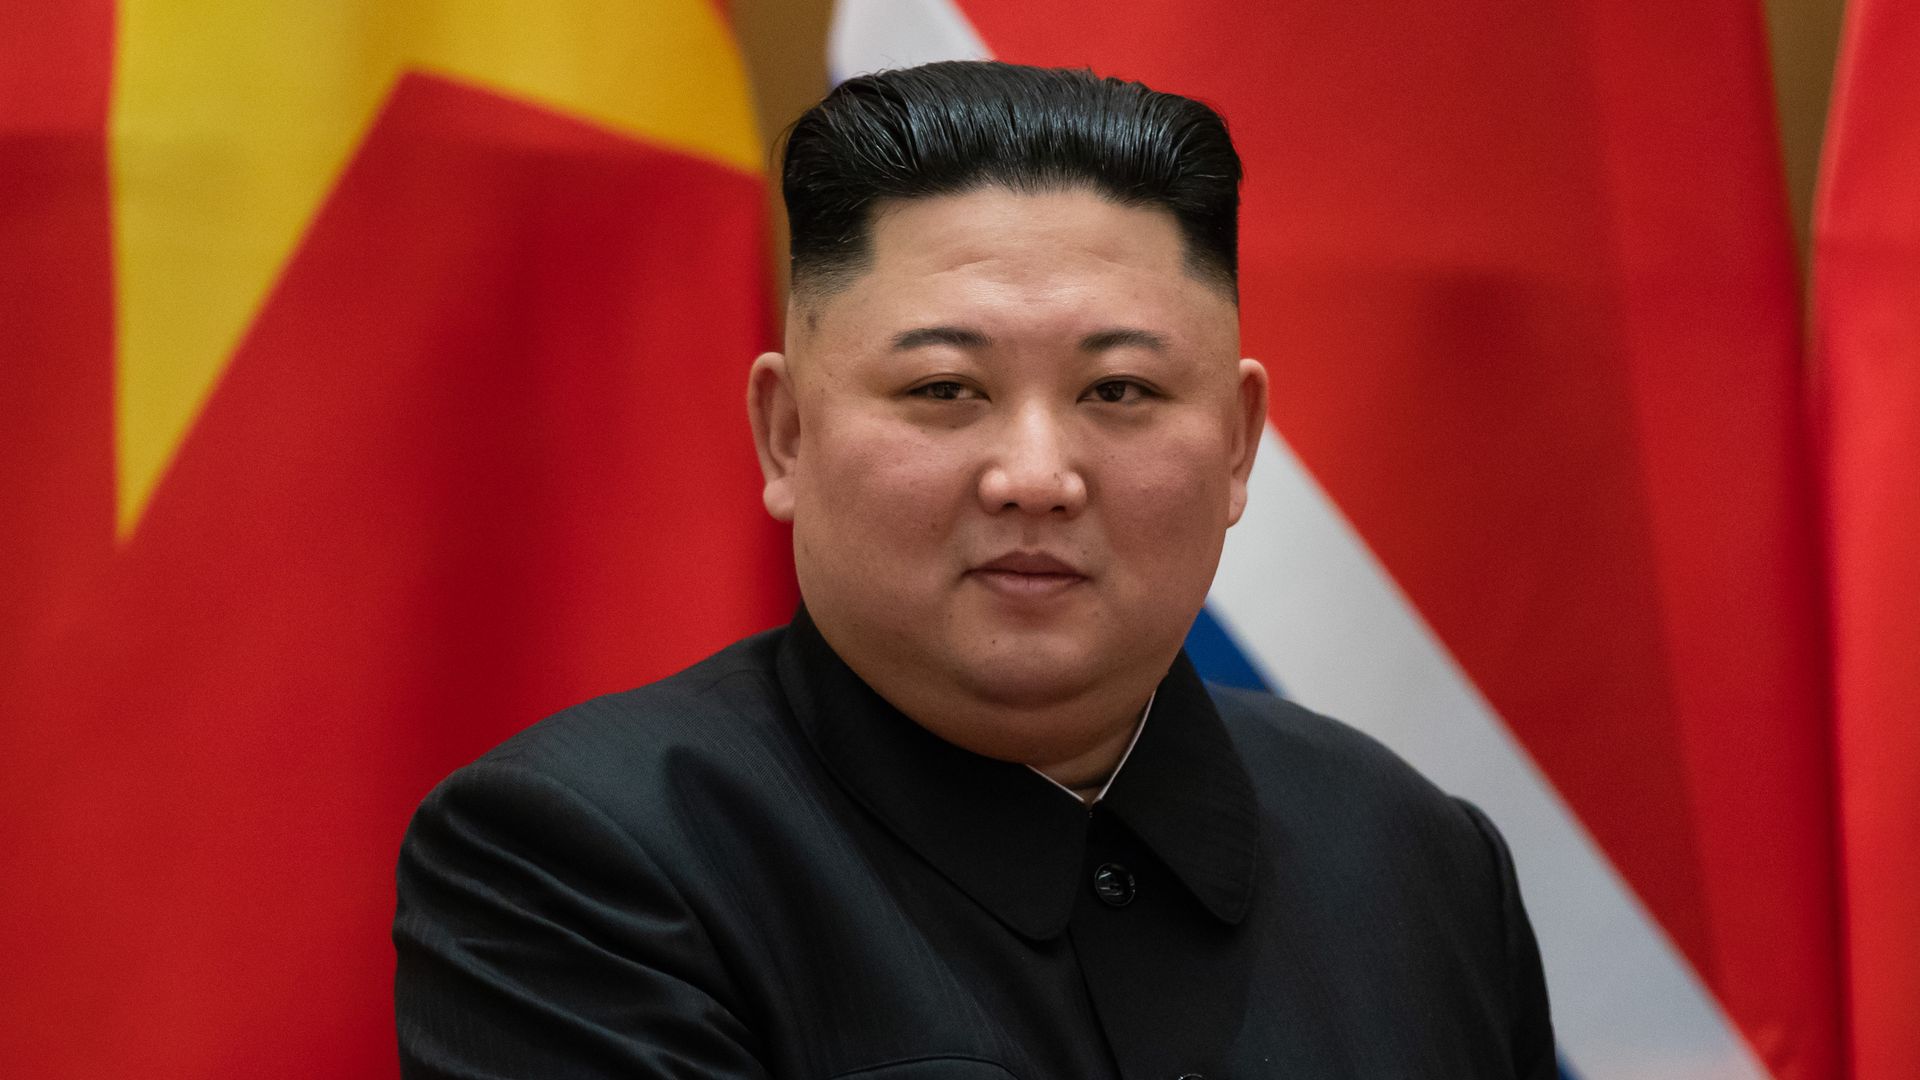 Kim Jong Un, North Korea's leader, poses for a photograph.